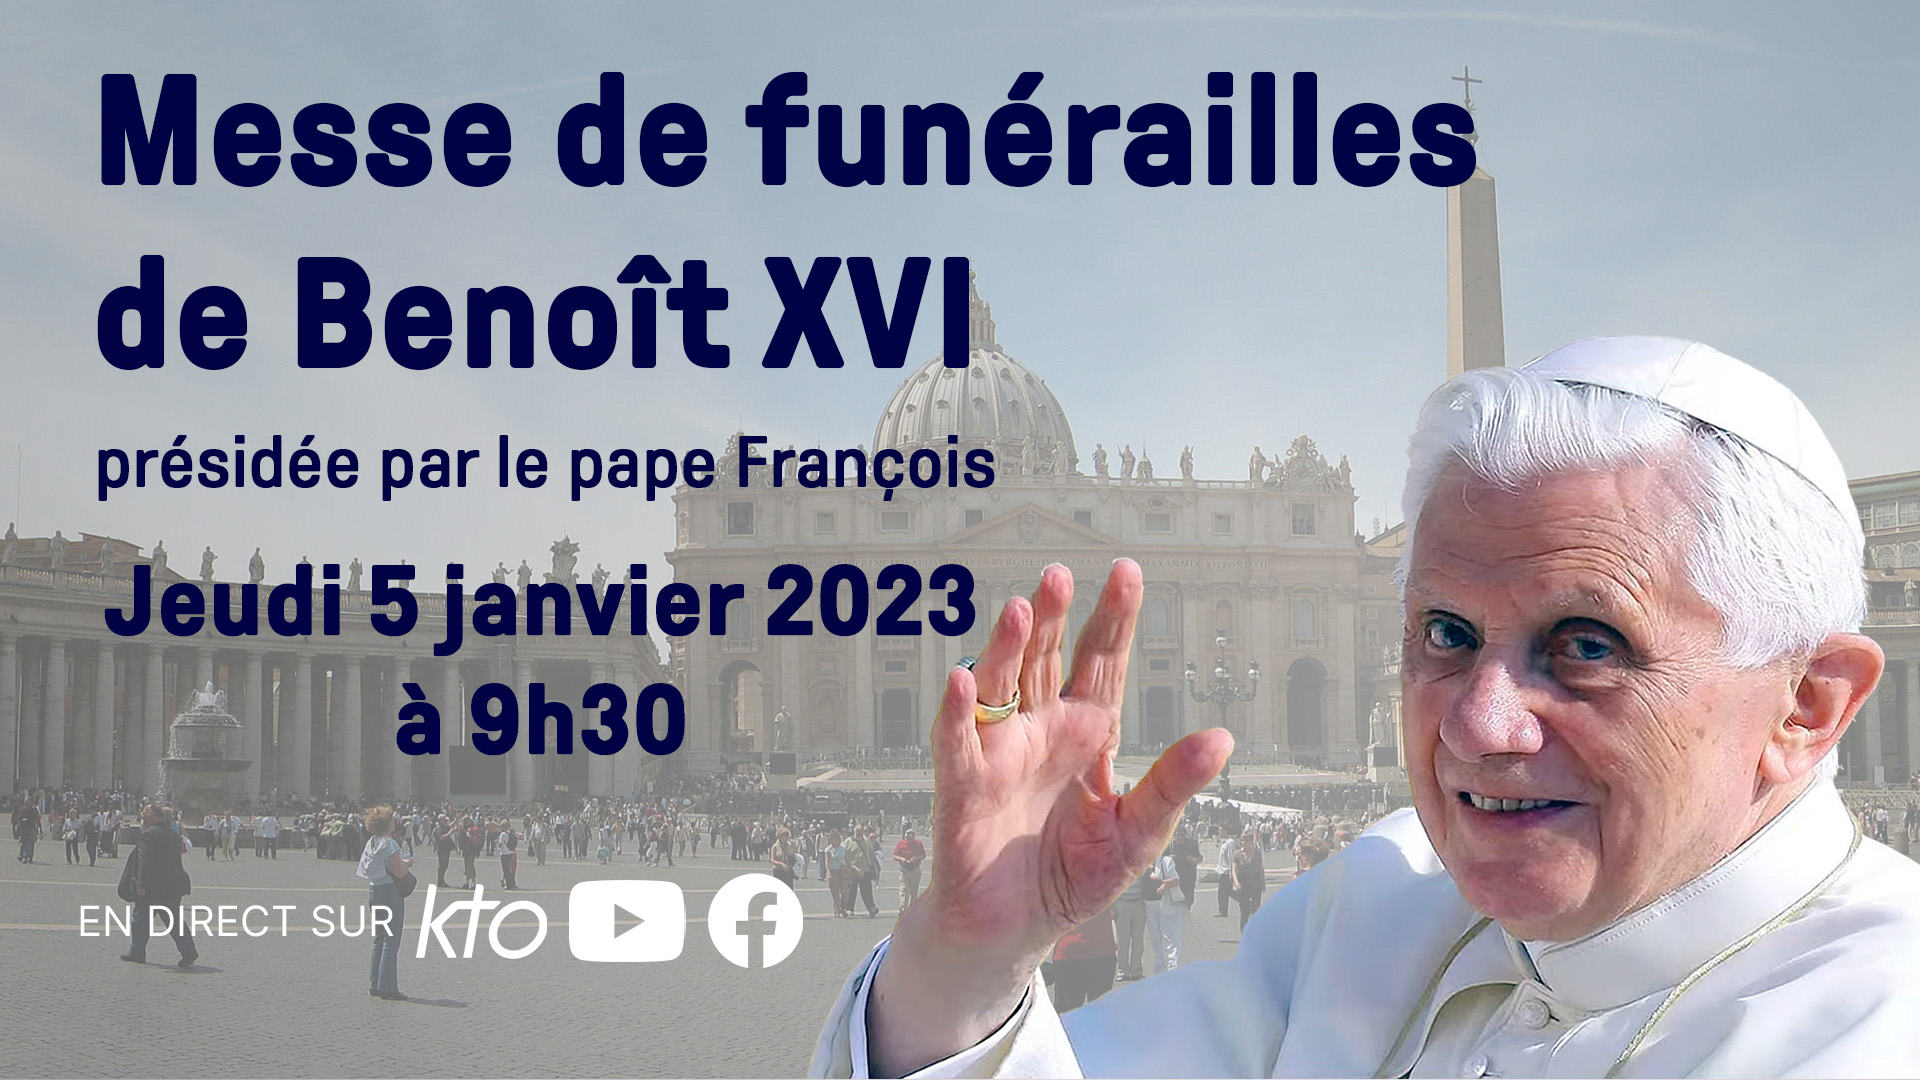 Obsèques du Pape Emérite Benoit XVI Visuel%20celebrations%20Funerailles%20Benoit%20XVI_v4